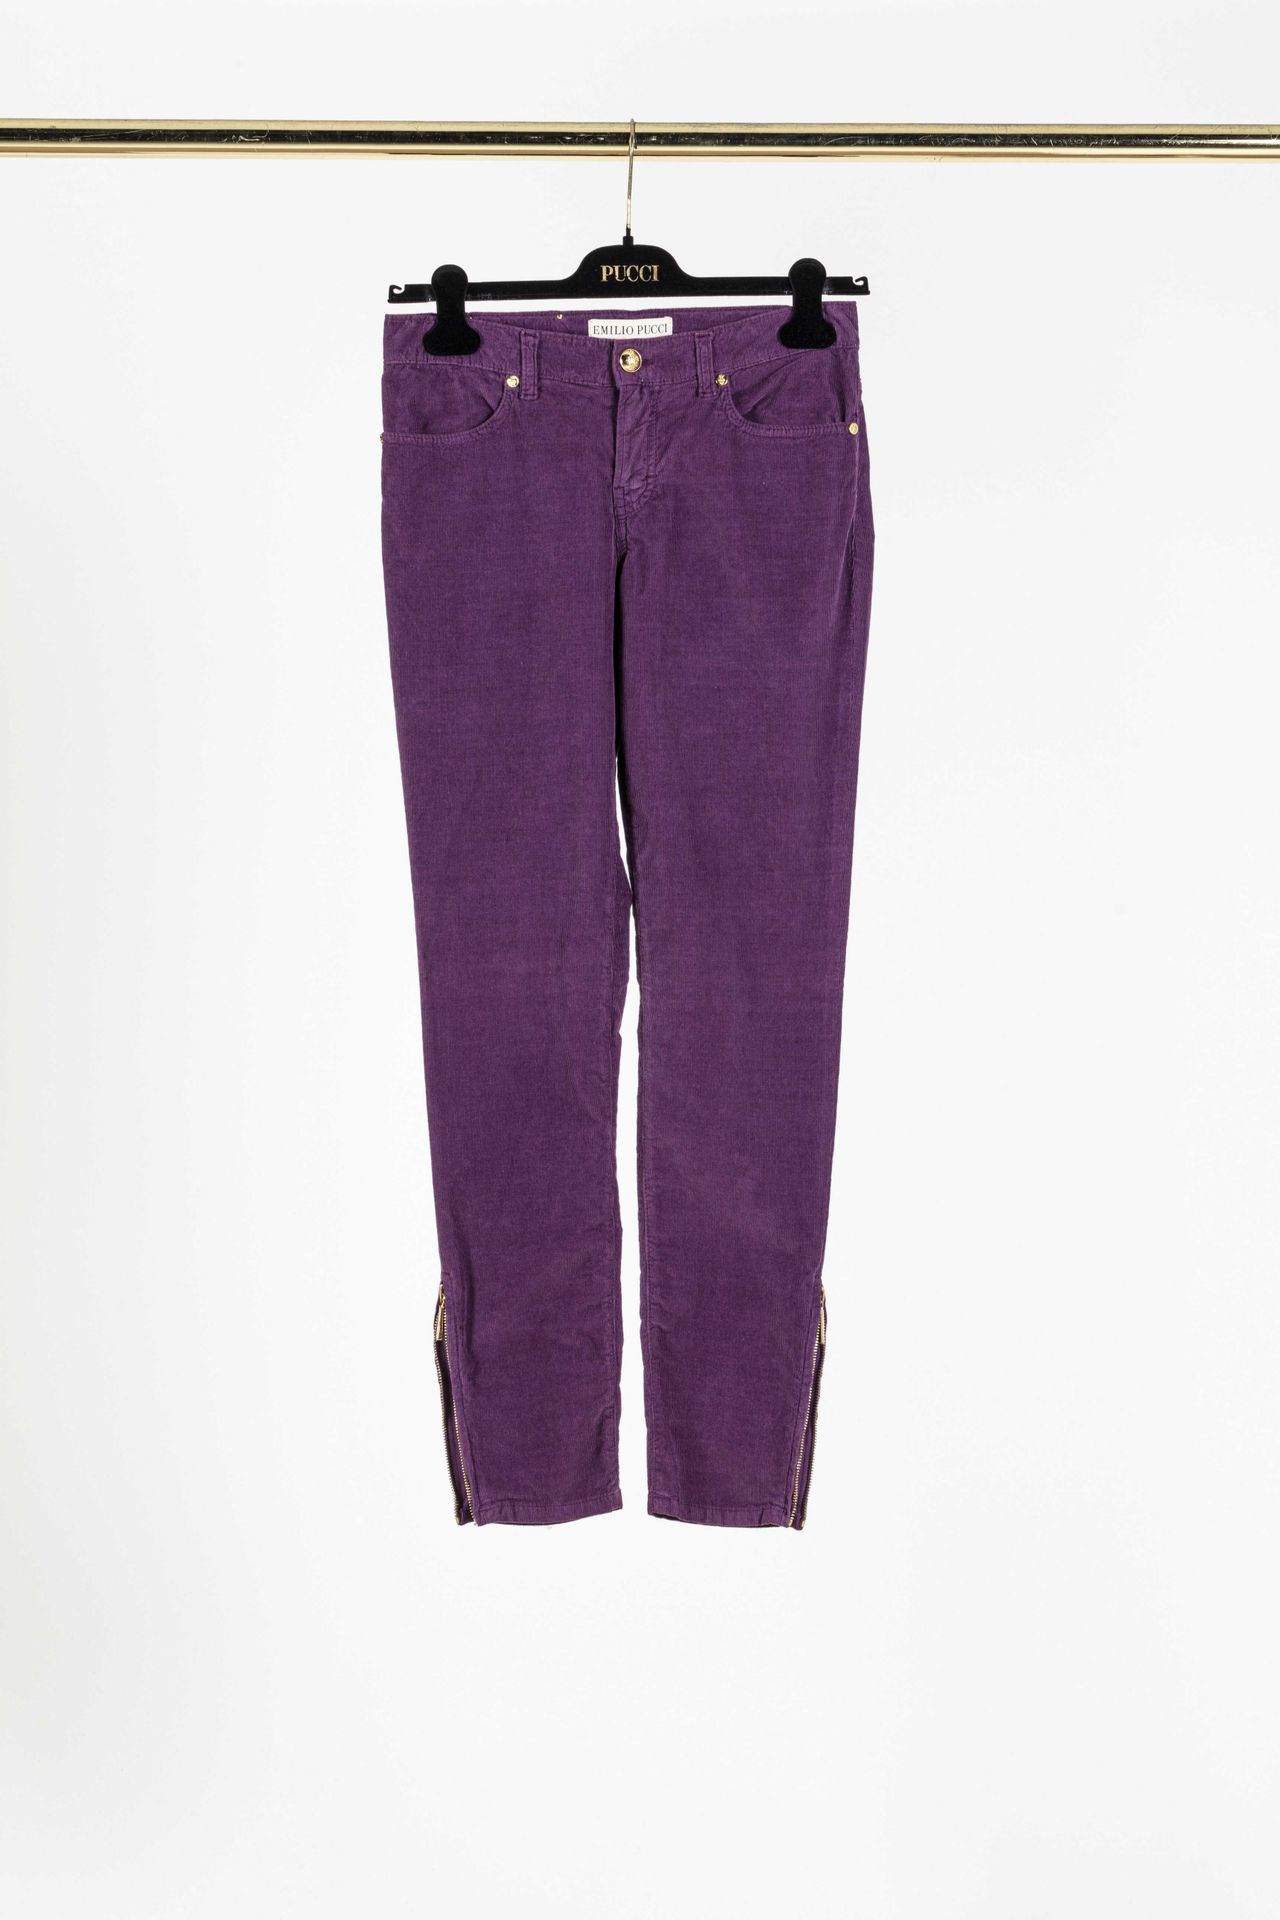 Null EMILIO PUCCI: due pantaloni di velluto a coste dritti, uno color melanzana &hellip;